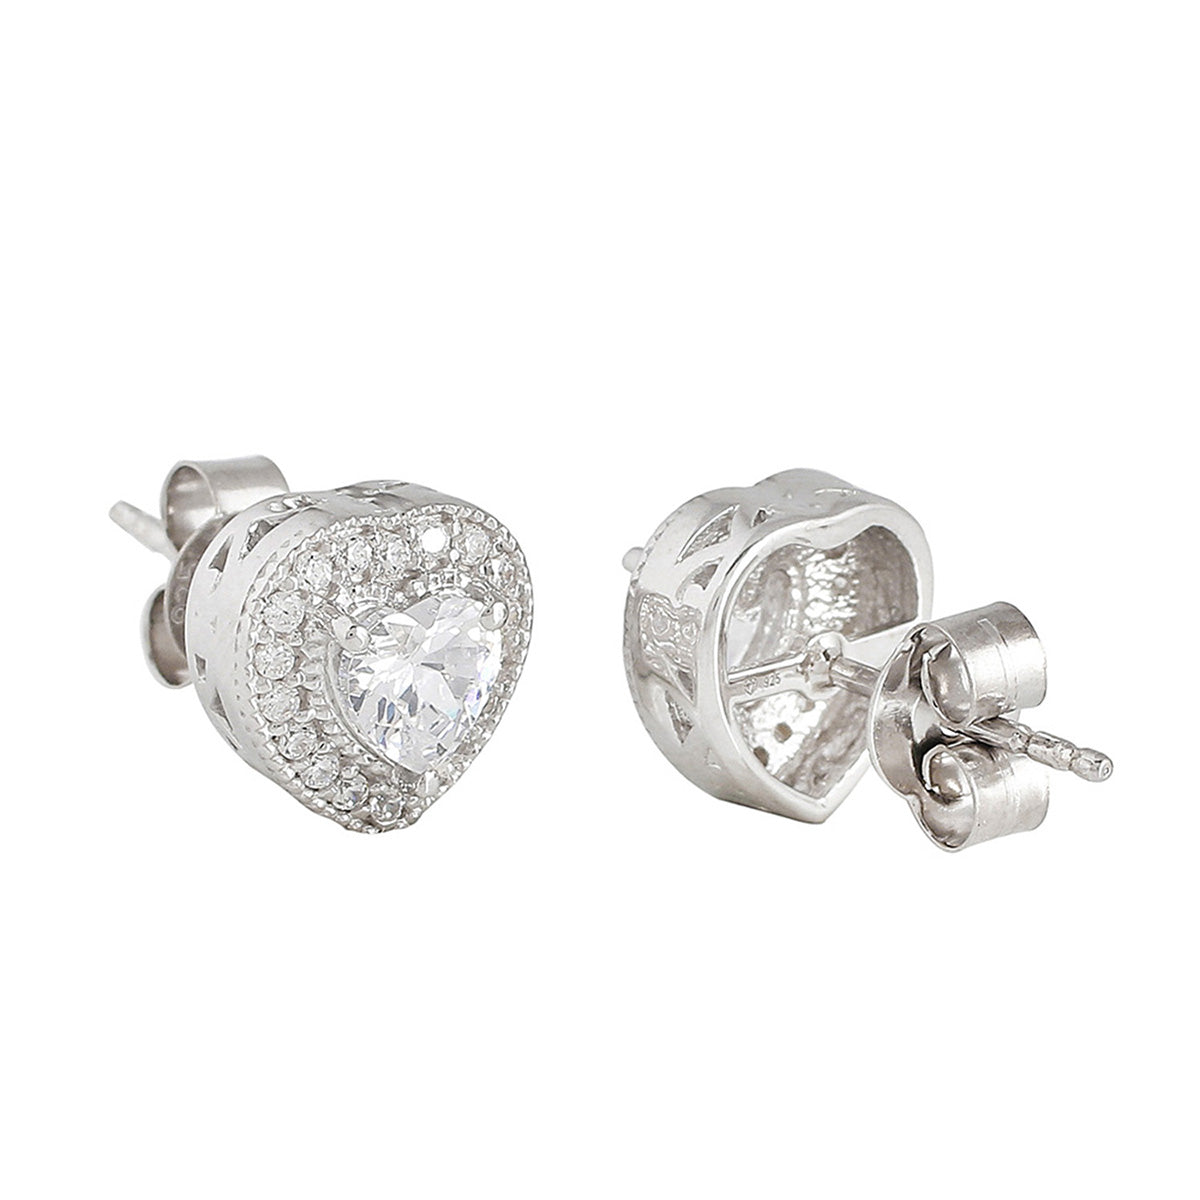 925 Sterling Silver Heart Shaped Earrings